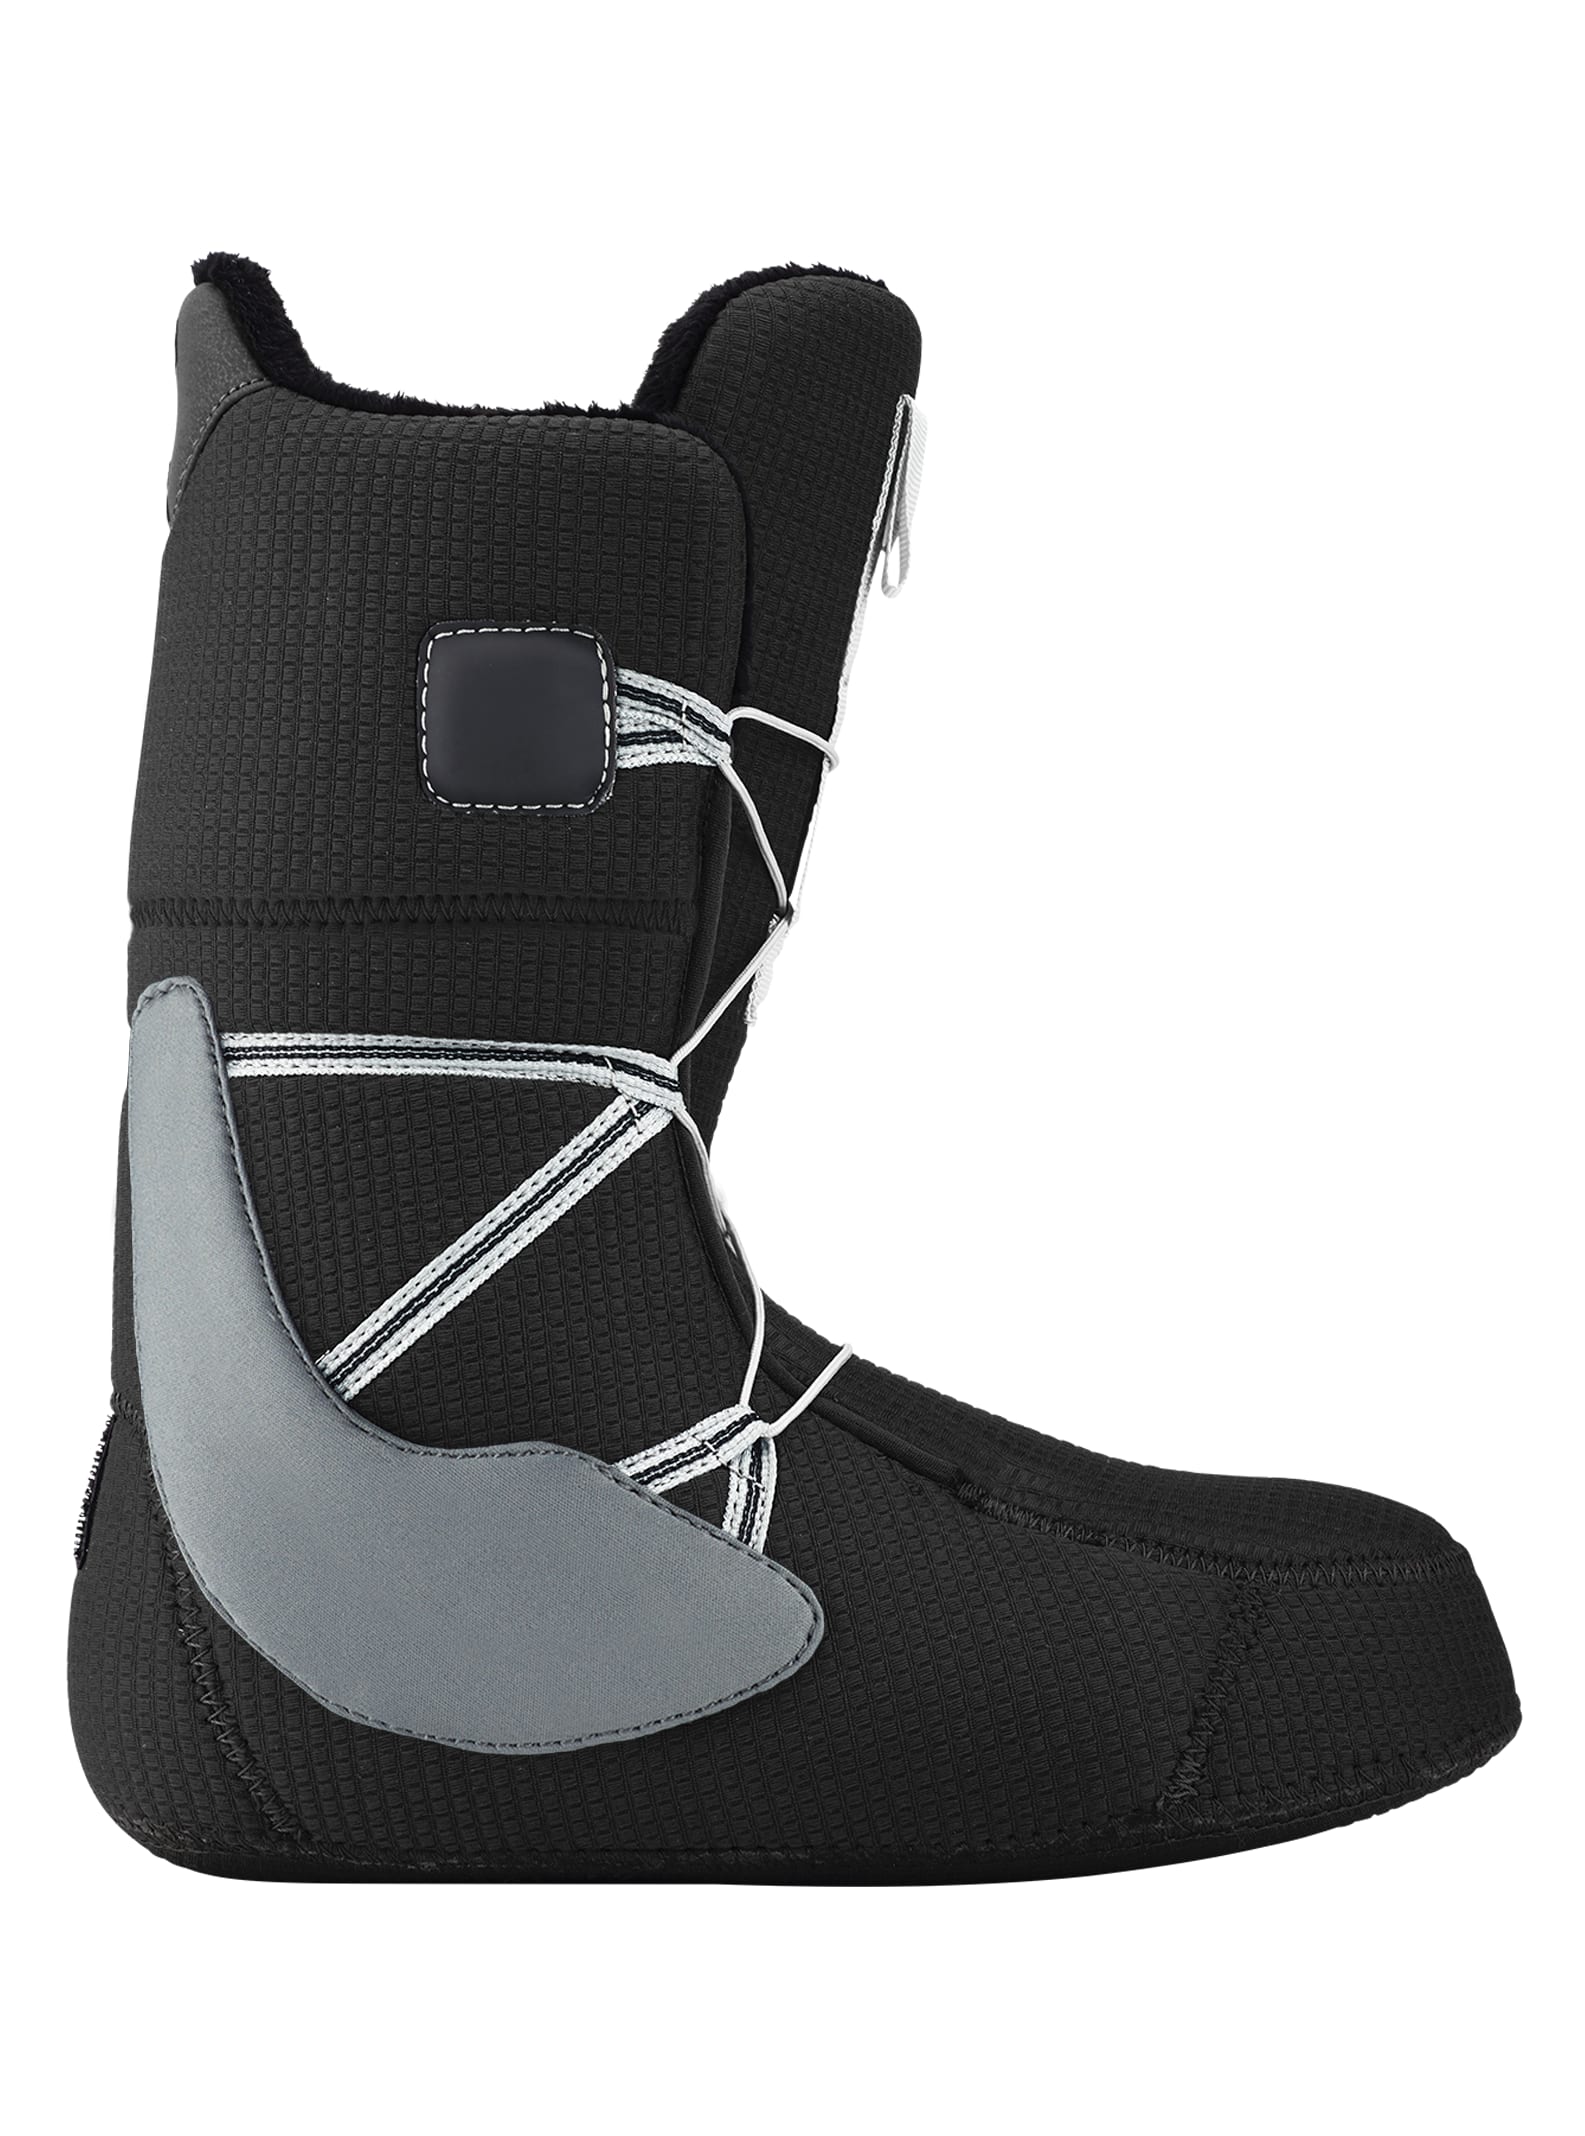 Men's Burton Moto BOA® Snowboard Boots - Wide | Burton.com Winter 